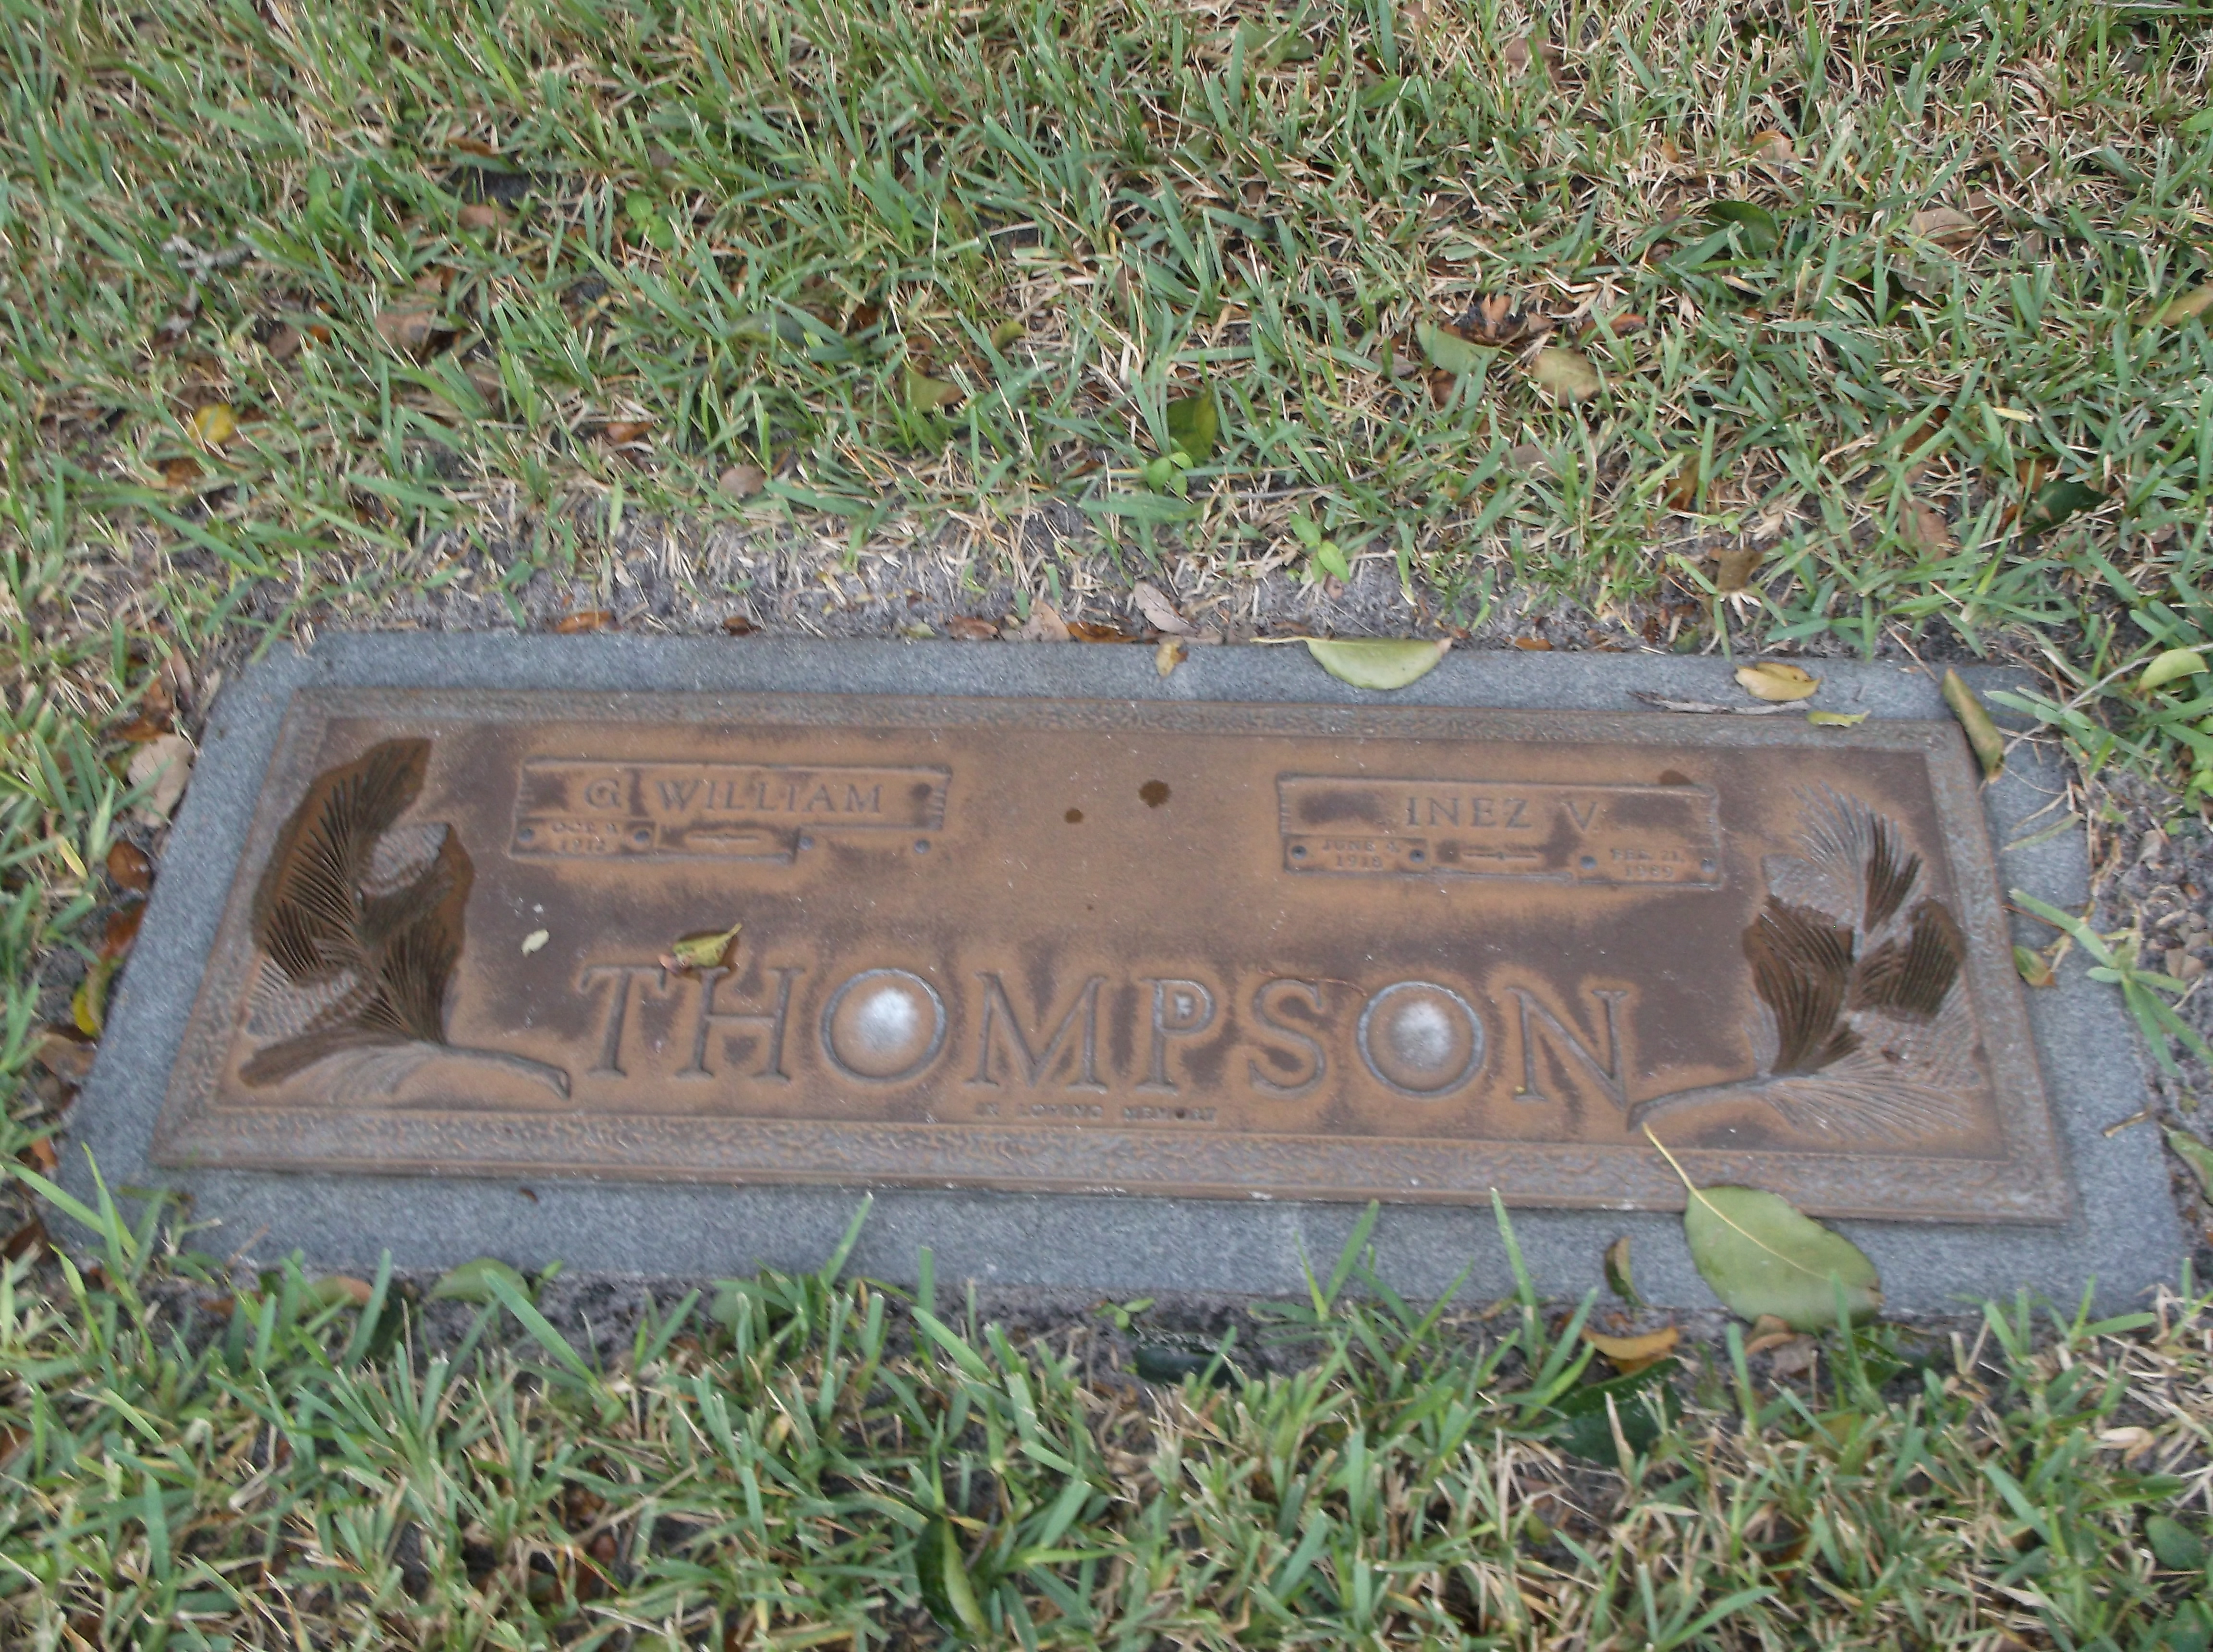 G William Thompson